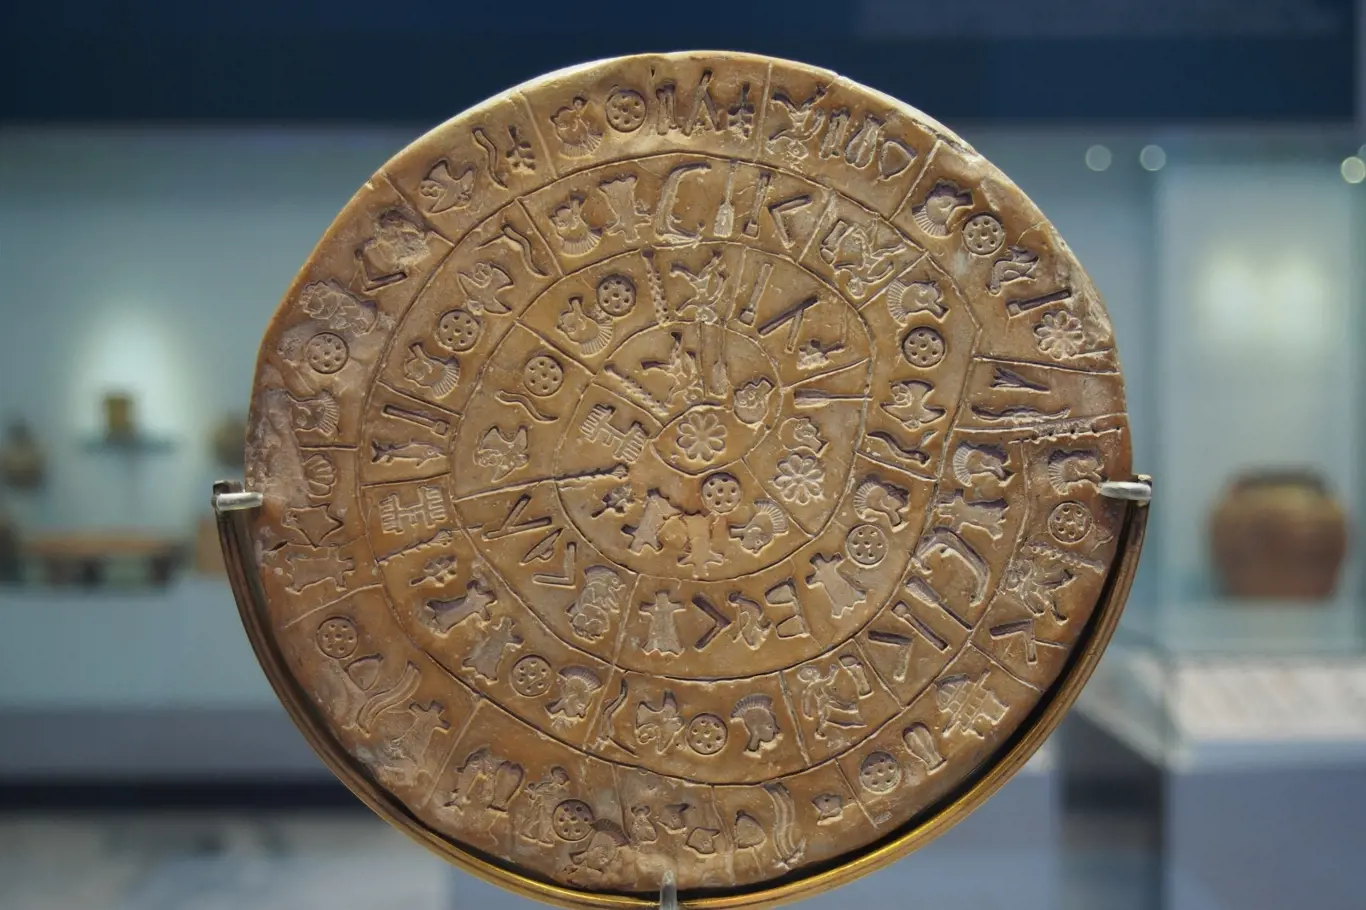 Strana A Faistova disku, jak je vystaven v Archeologickém muzeu v Heraklionu po renovaci v roce 2014.